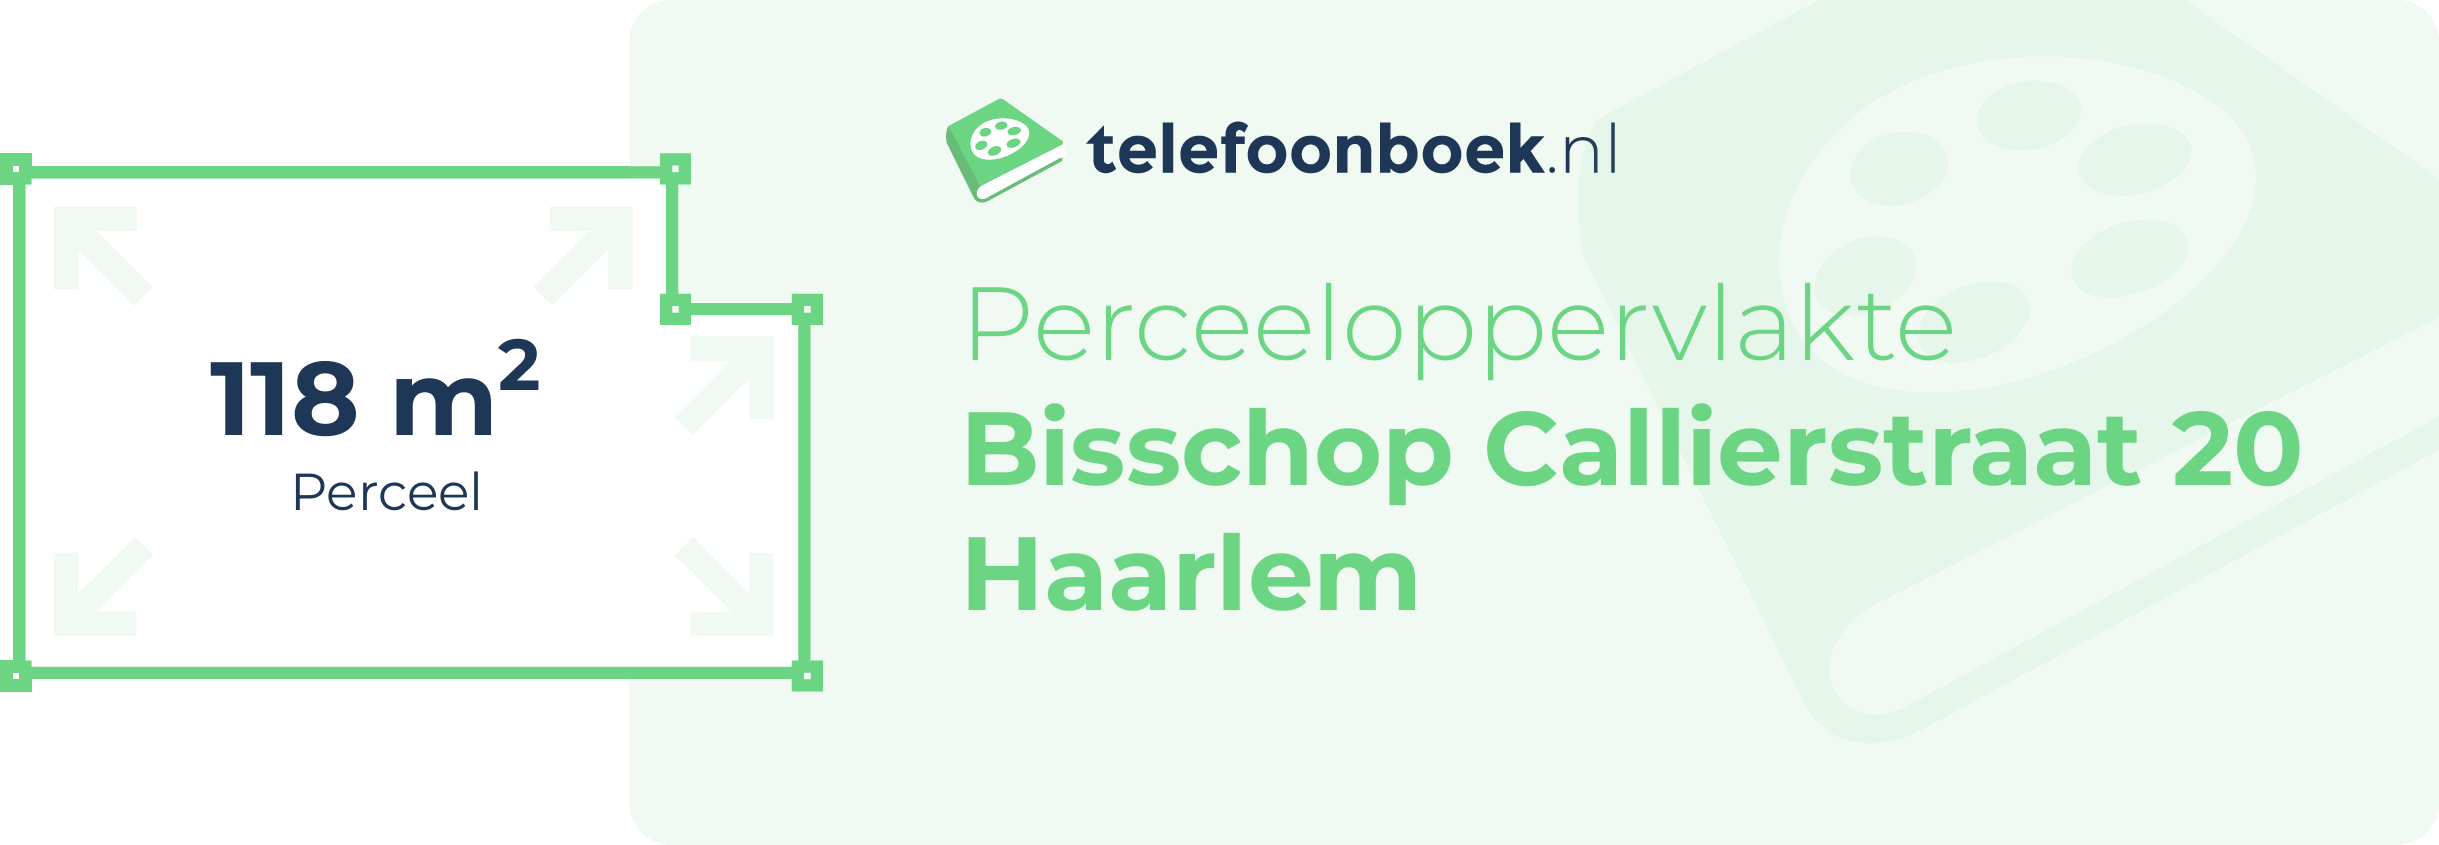 Perceeloppervlakte Bisschop Callierstraat 20 Haarlem